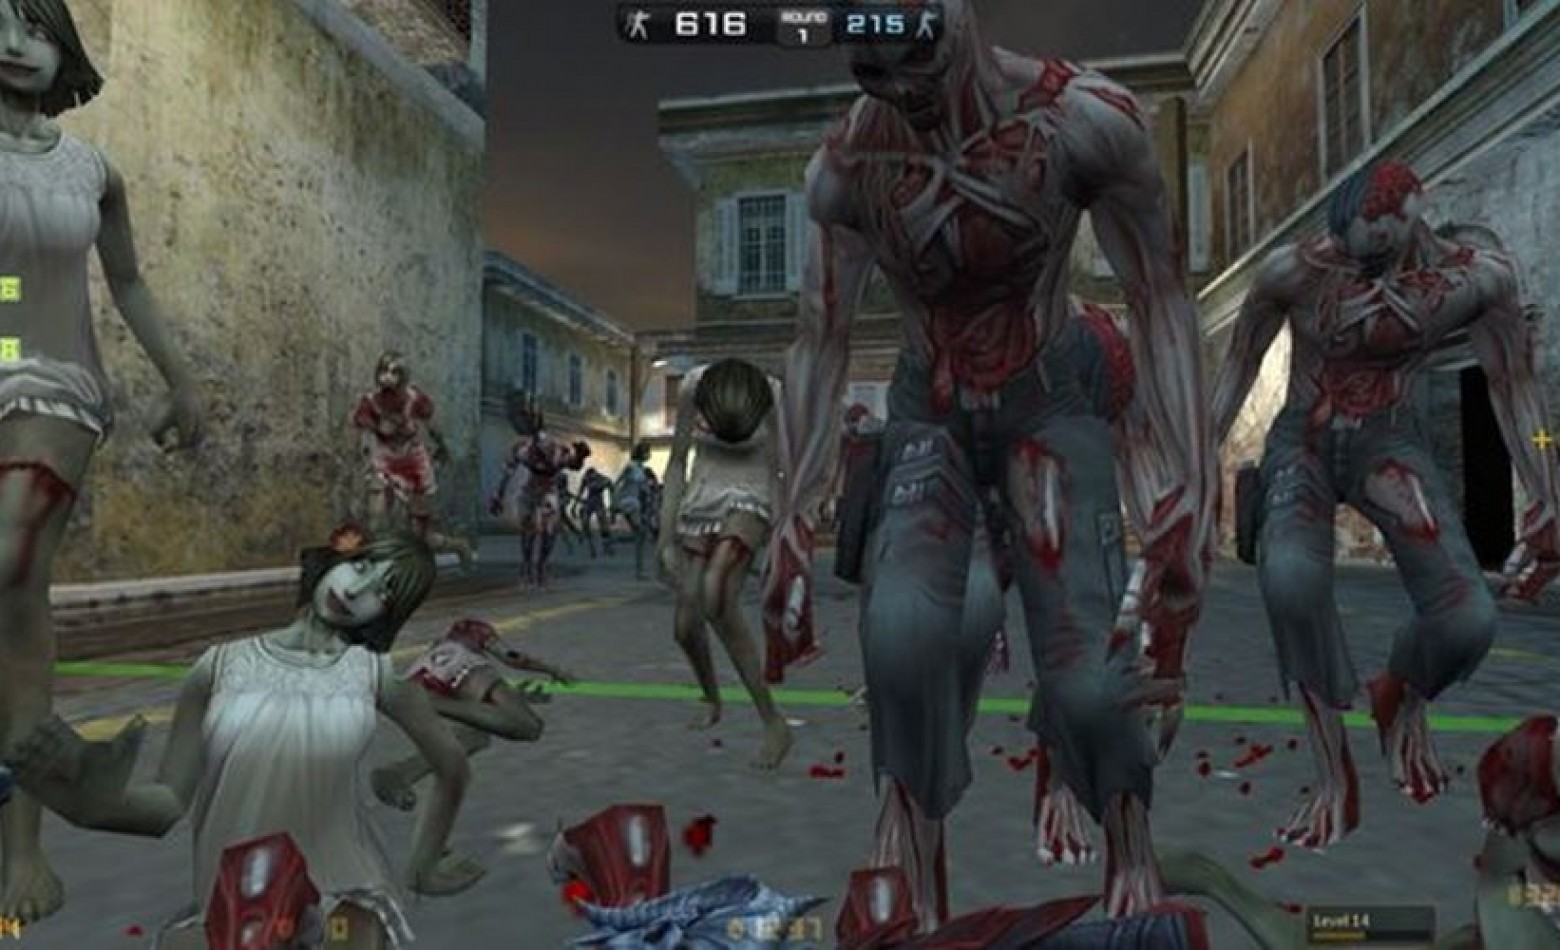 Beta do “Counter-Strike de zumbi” começa em 23 de setembro